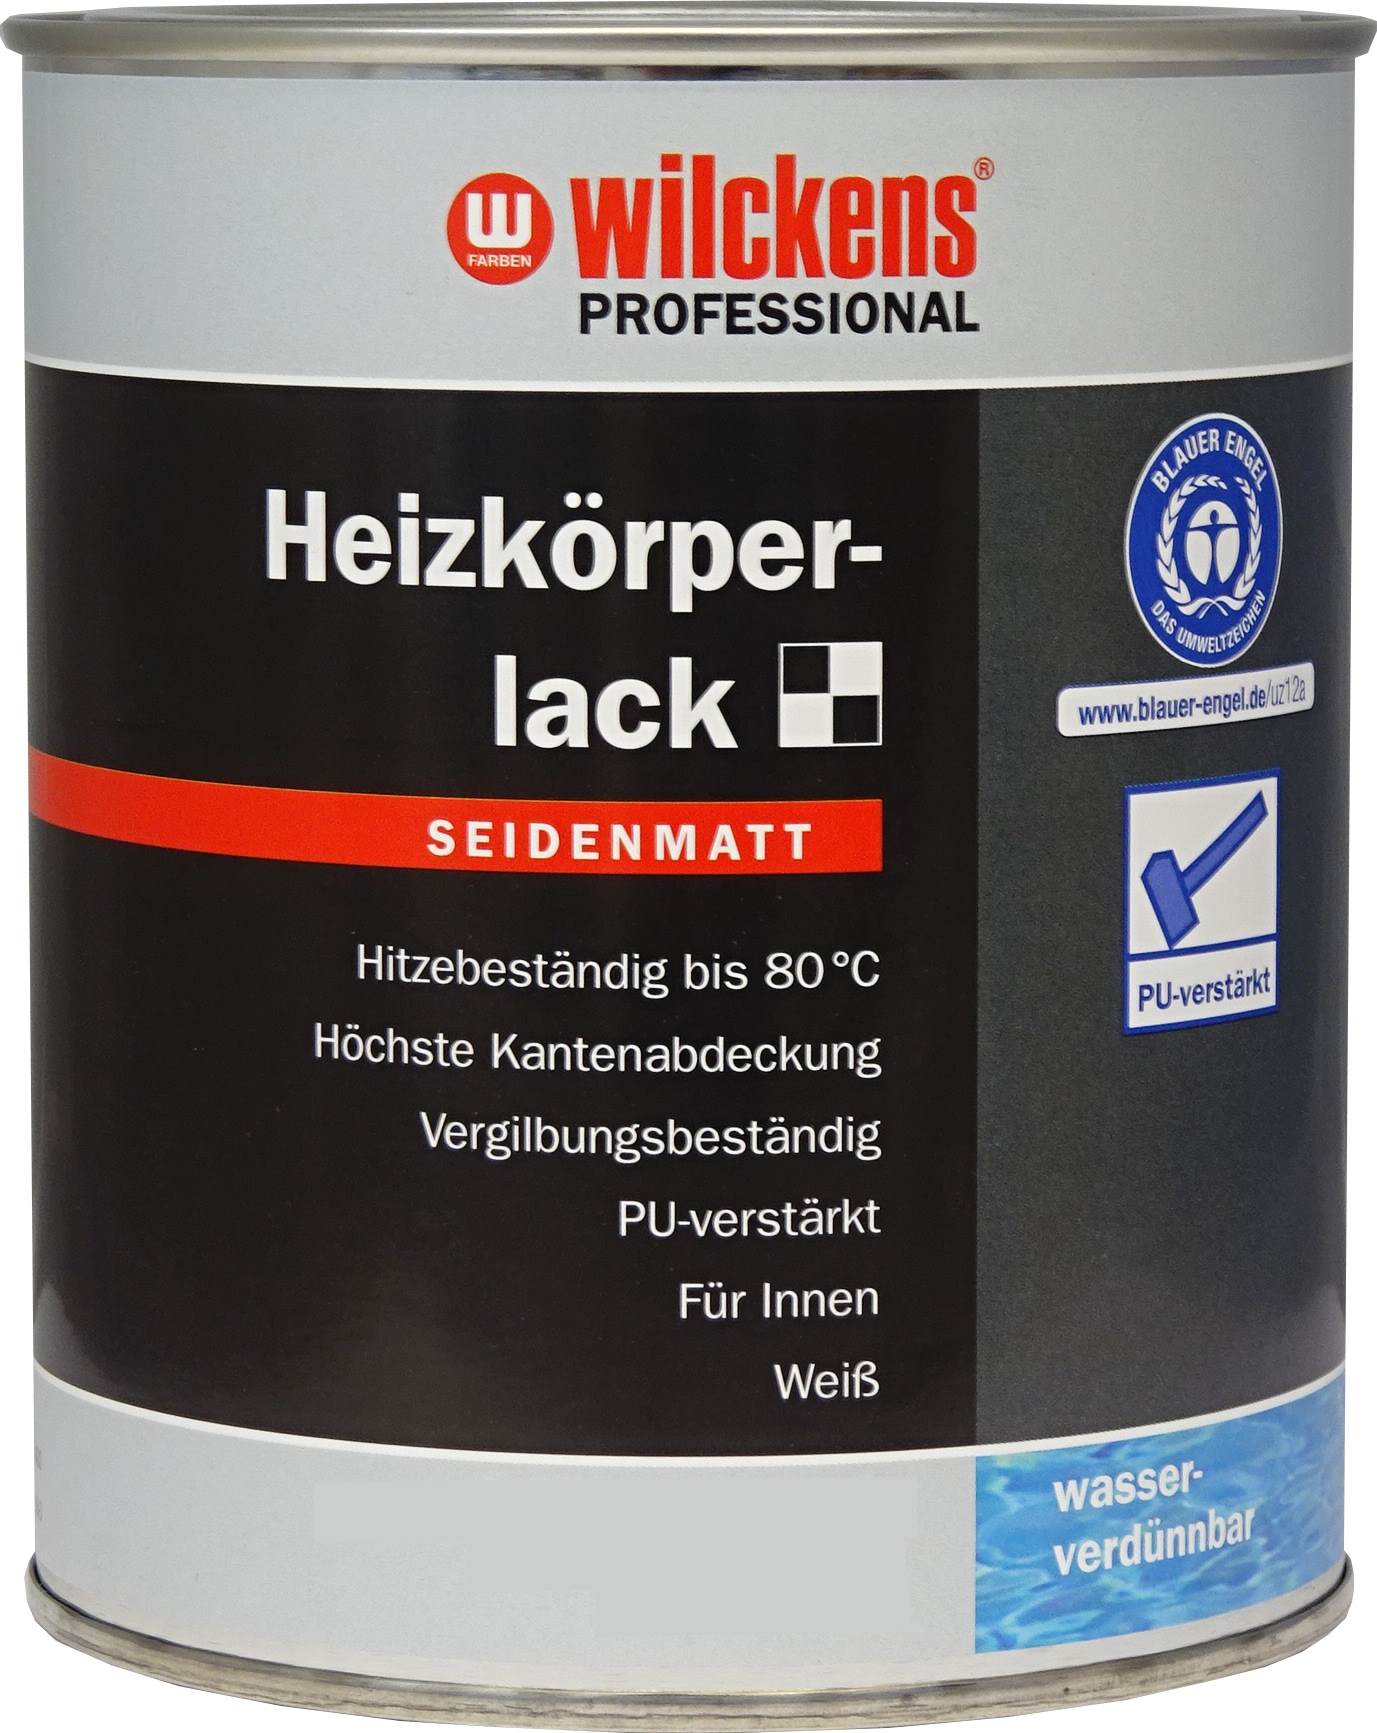 Wilckens Professional Heizkörperlack 2,5 L. Weiß Seidenmatt, geruchsneutral